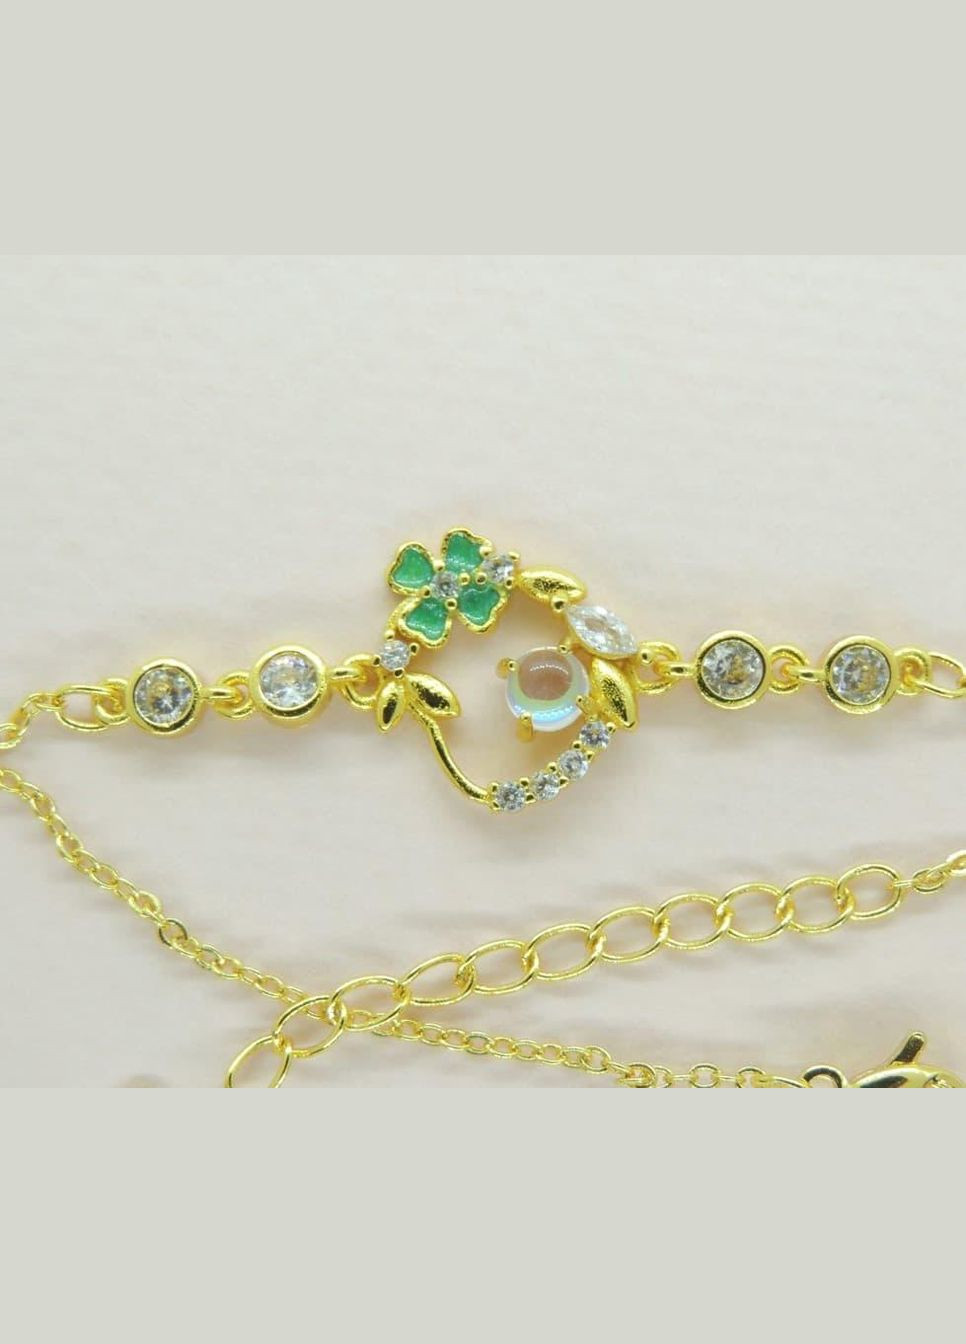 Браслет женский под золото Liresmina Jewelry браслет Талисман удачи четырехлистный клевер золотистый Fashion Jewelry (285780978)